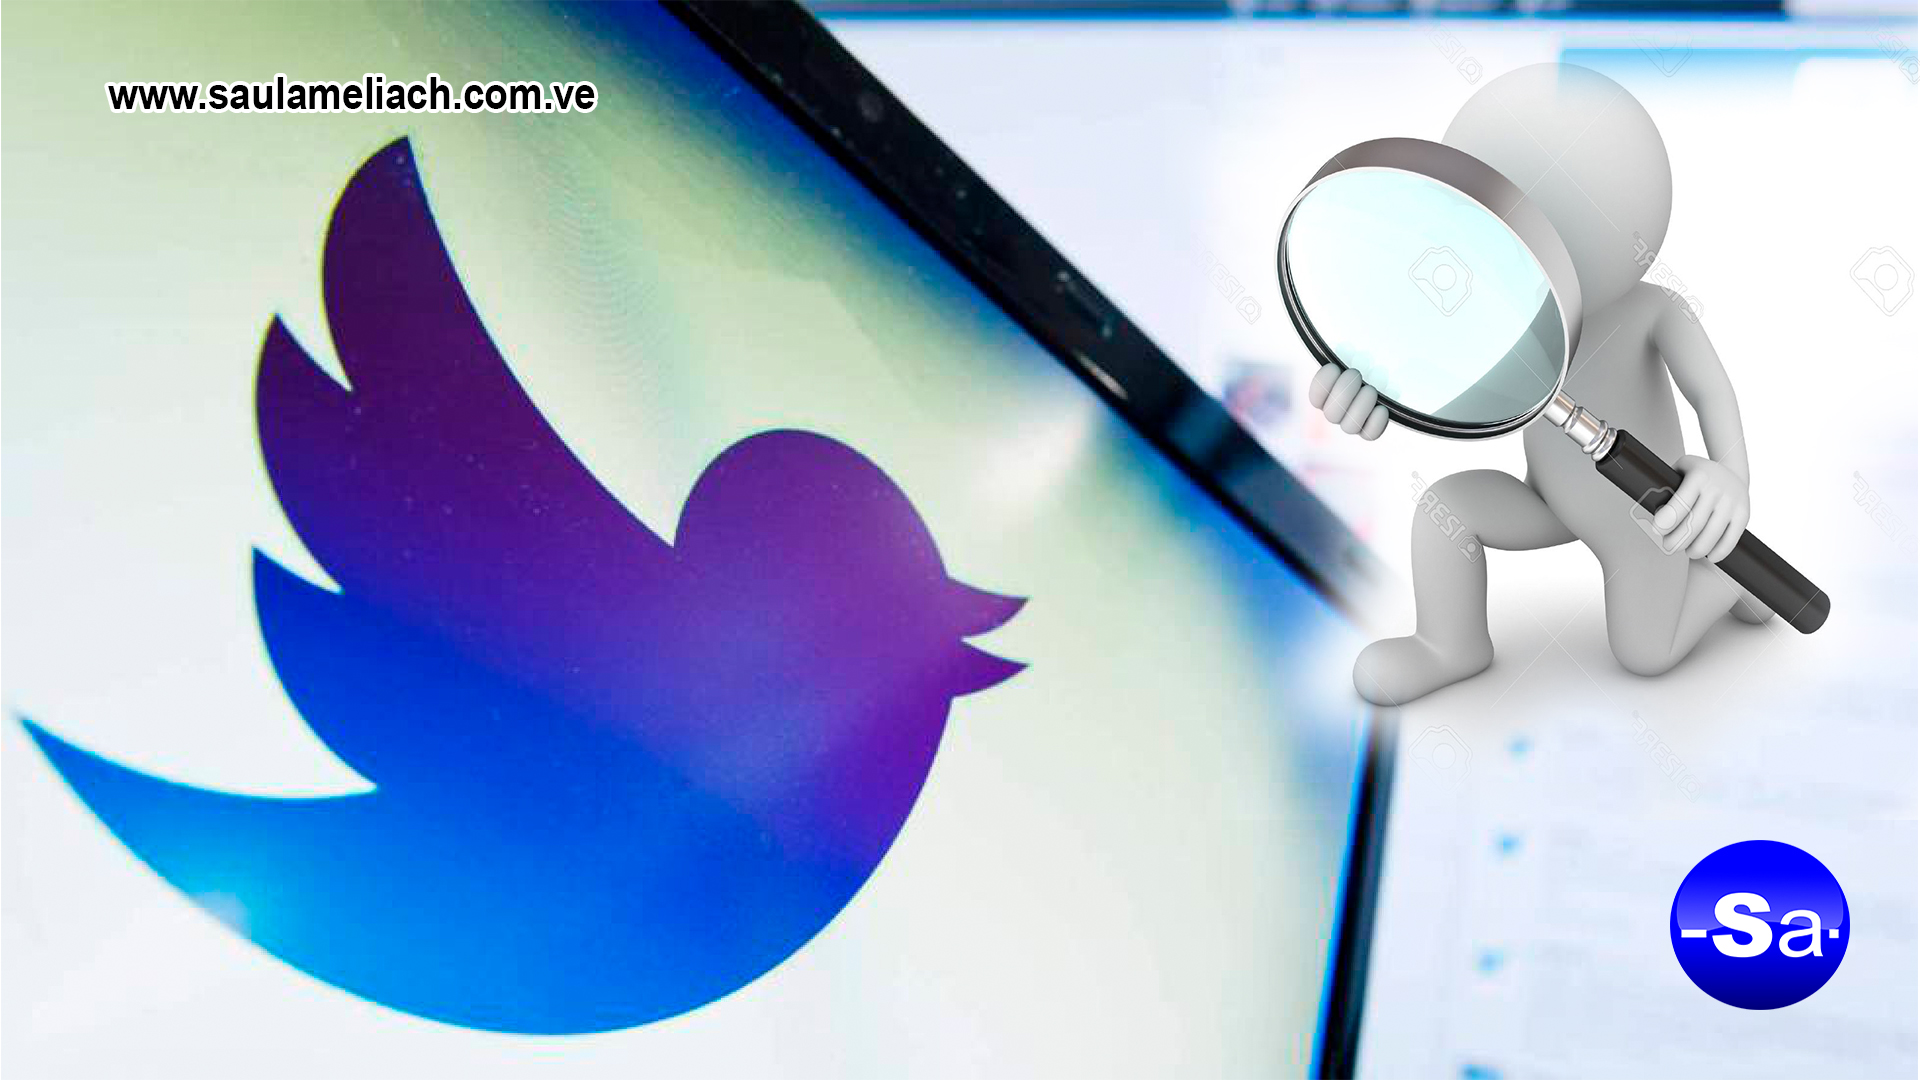 Saul Ameliach - Twitter ha revelado como clasifica los tweets en los resultados de búsquedas